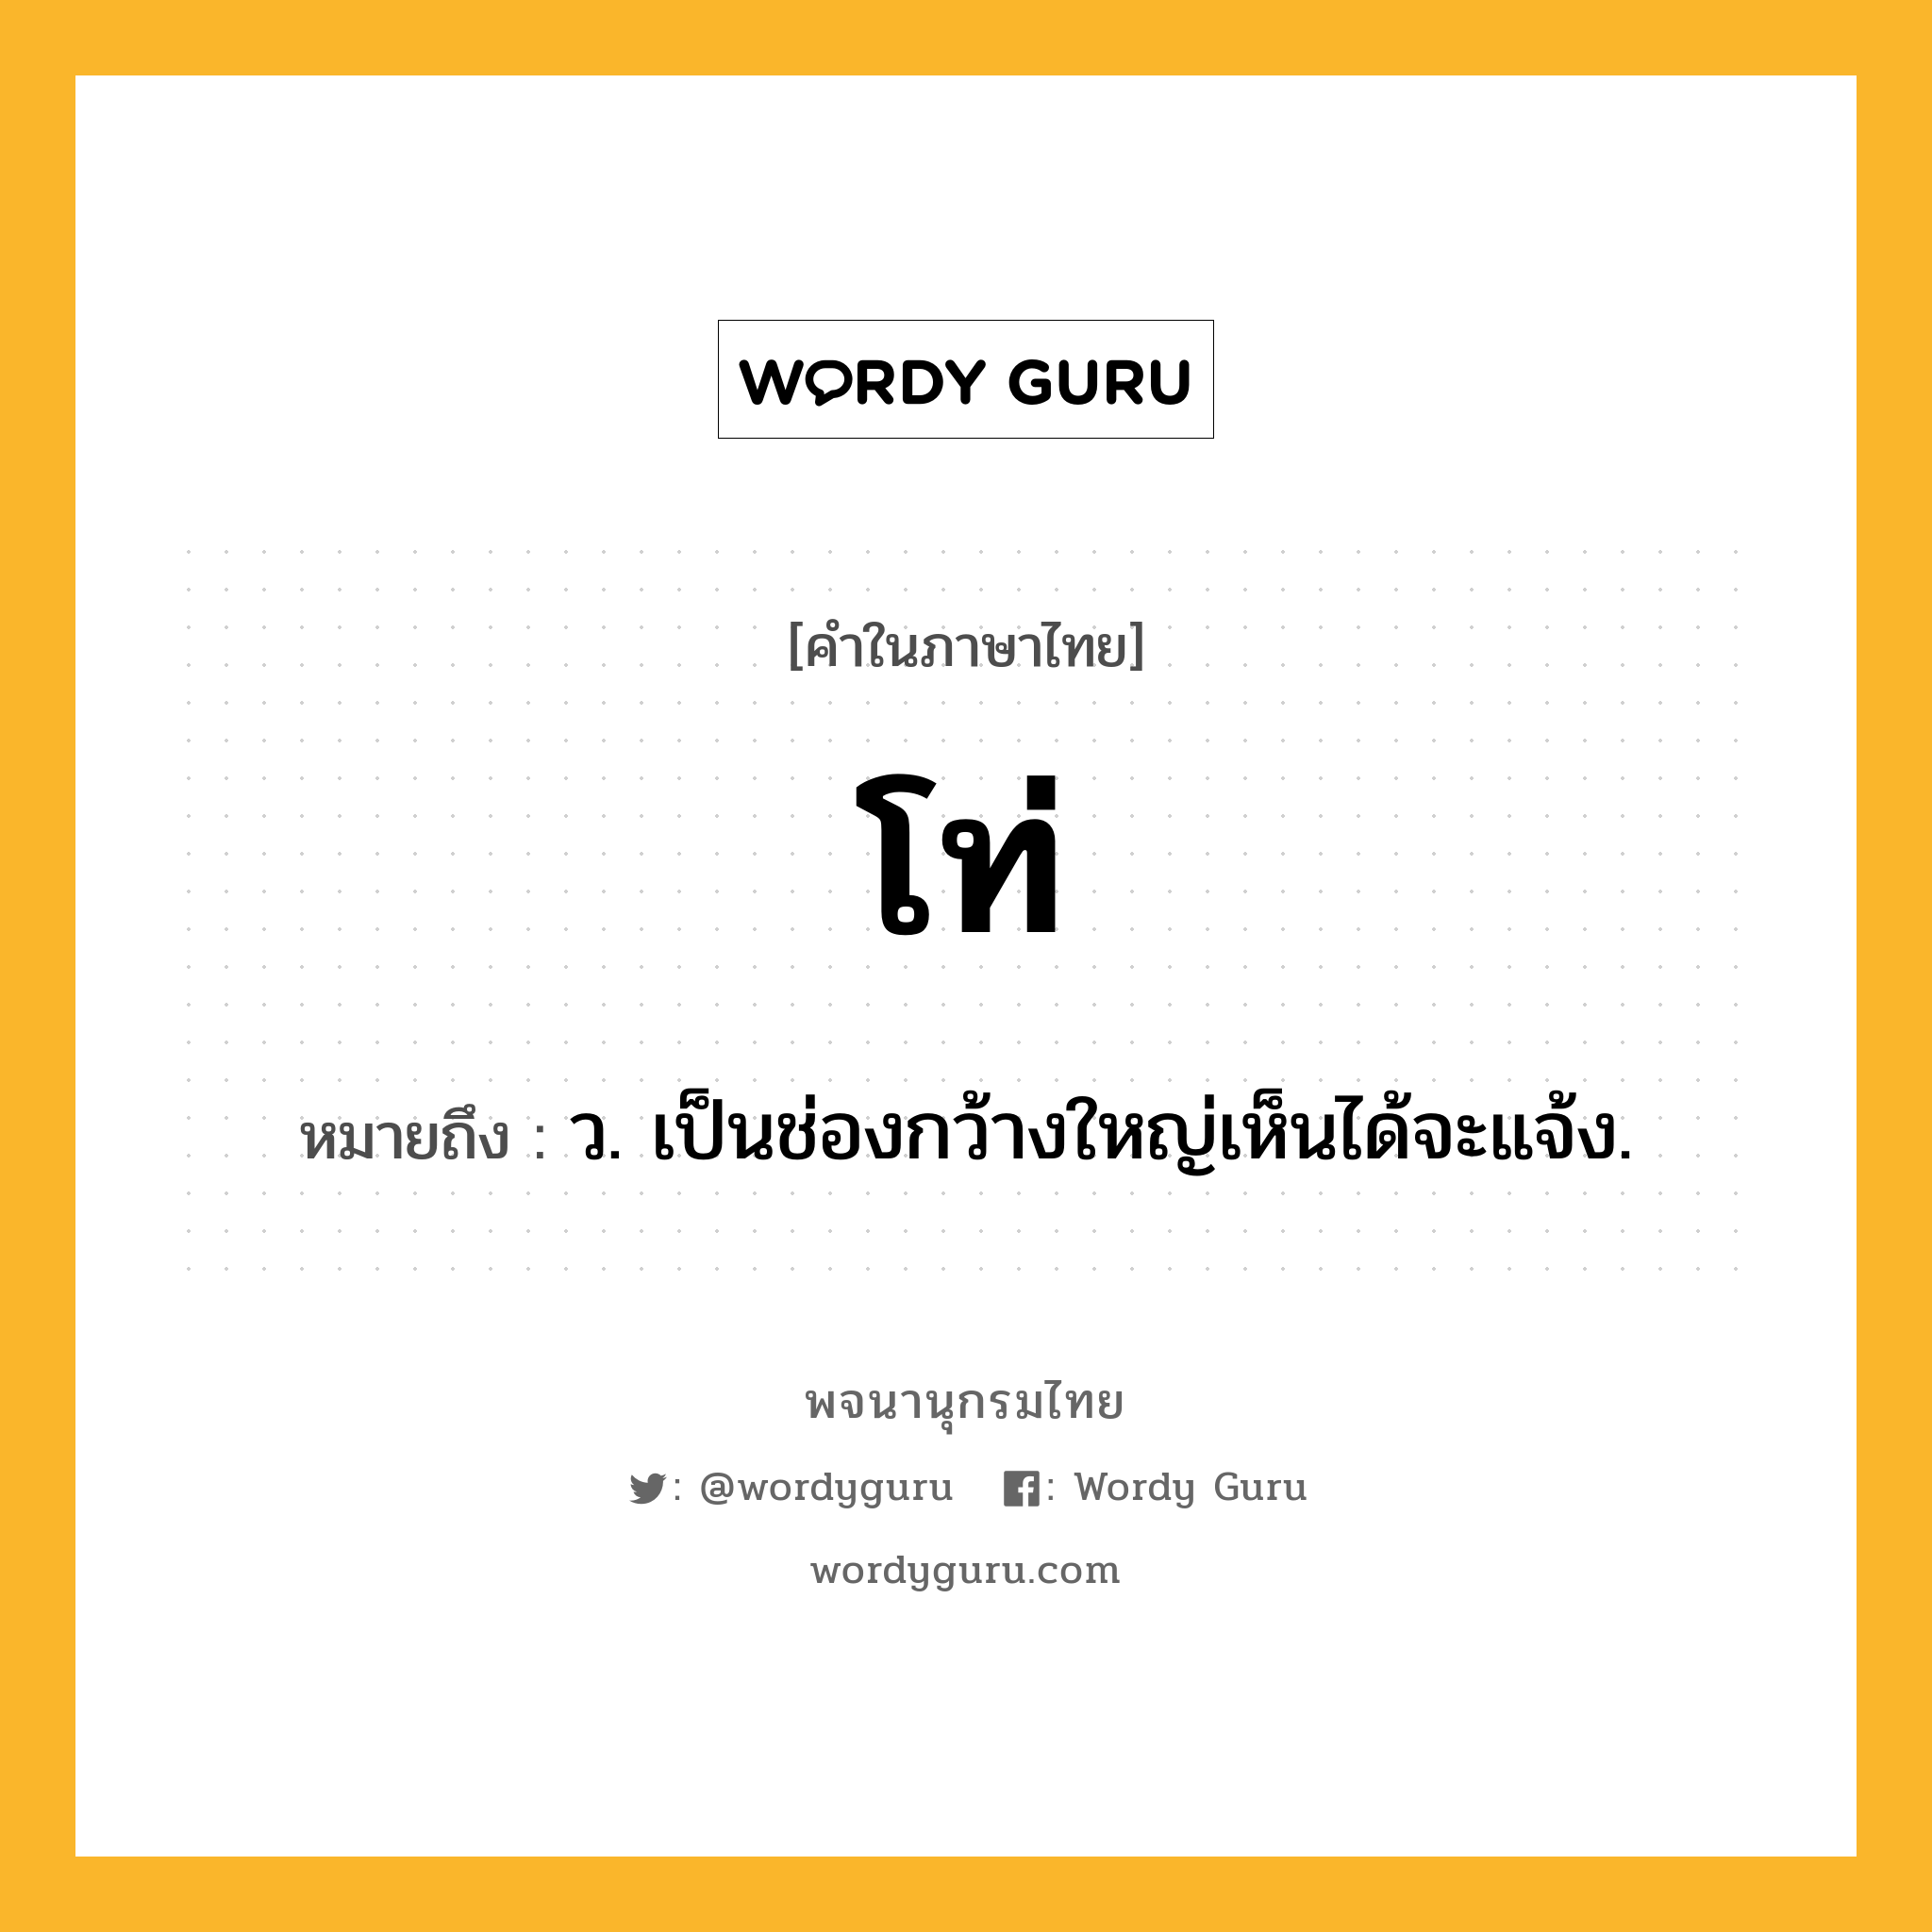 โท่ ความหมาย หมายถึงอะไร?, คำในภาษาไทย โท่ หมายถึง ว. เป็นช่องกว้างใหญ่เห็นได้จะแจ้ง.